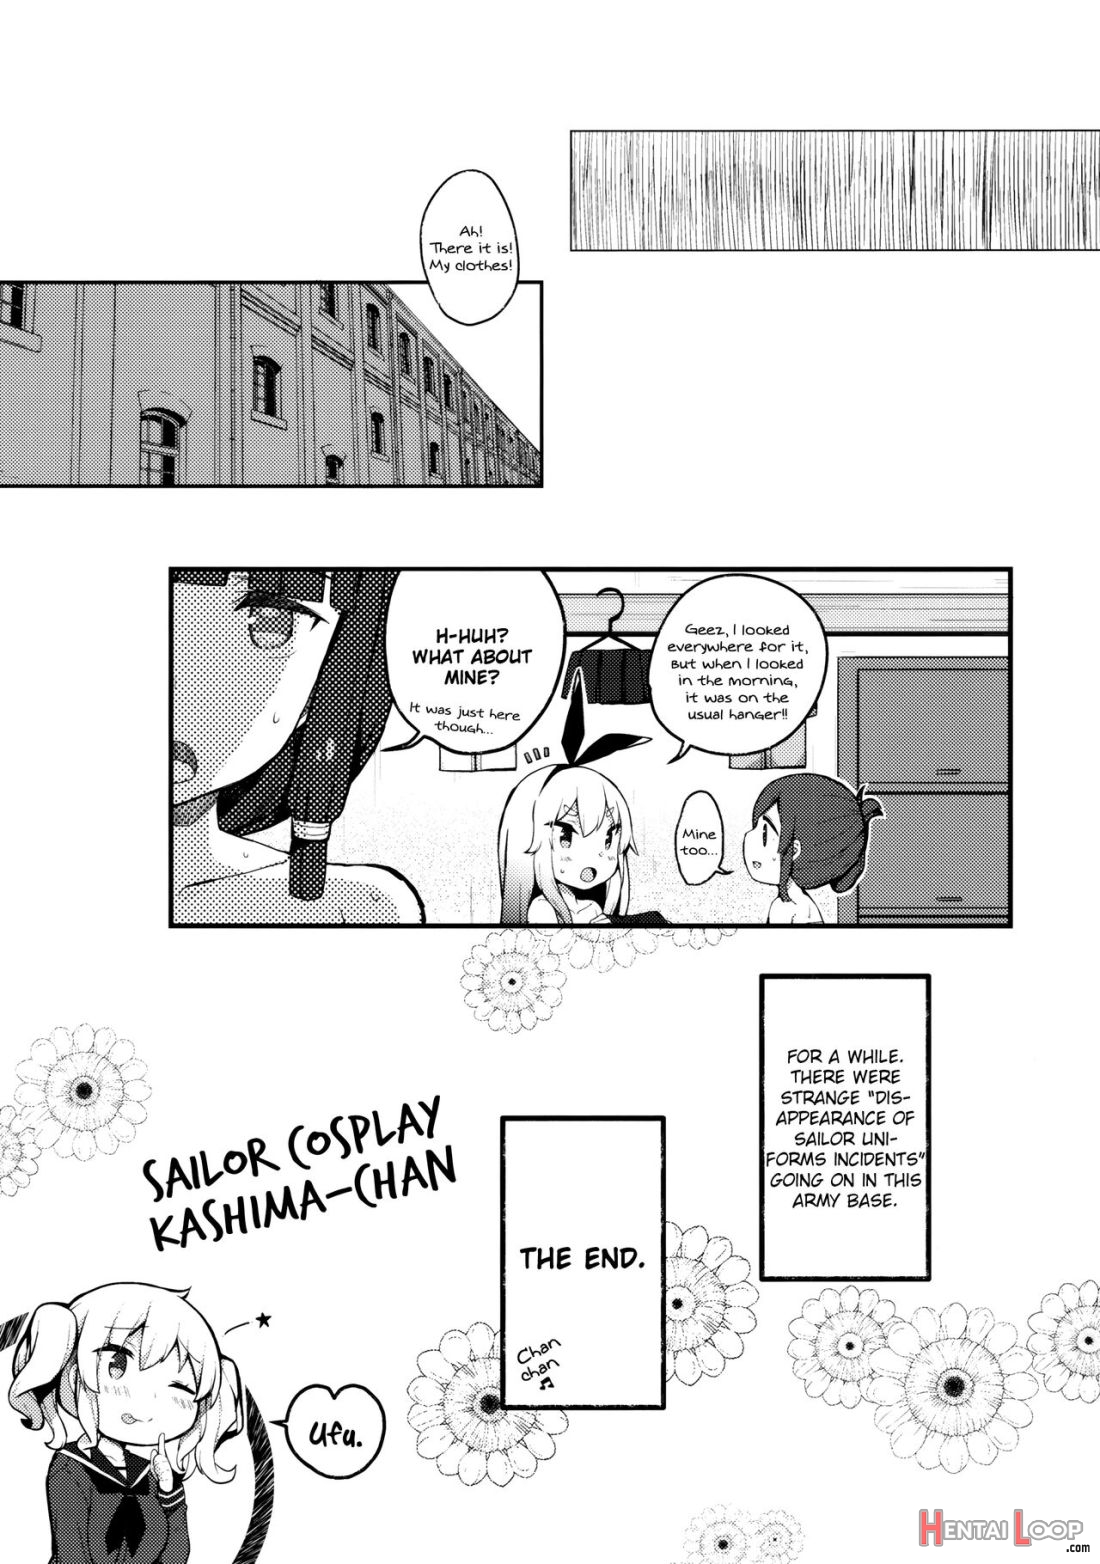 Sailor Cosplay Kashima-chan page 15